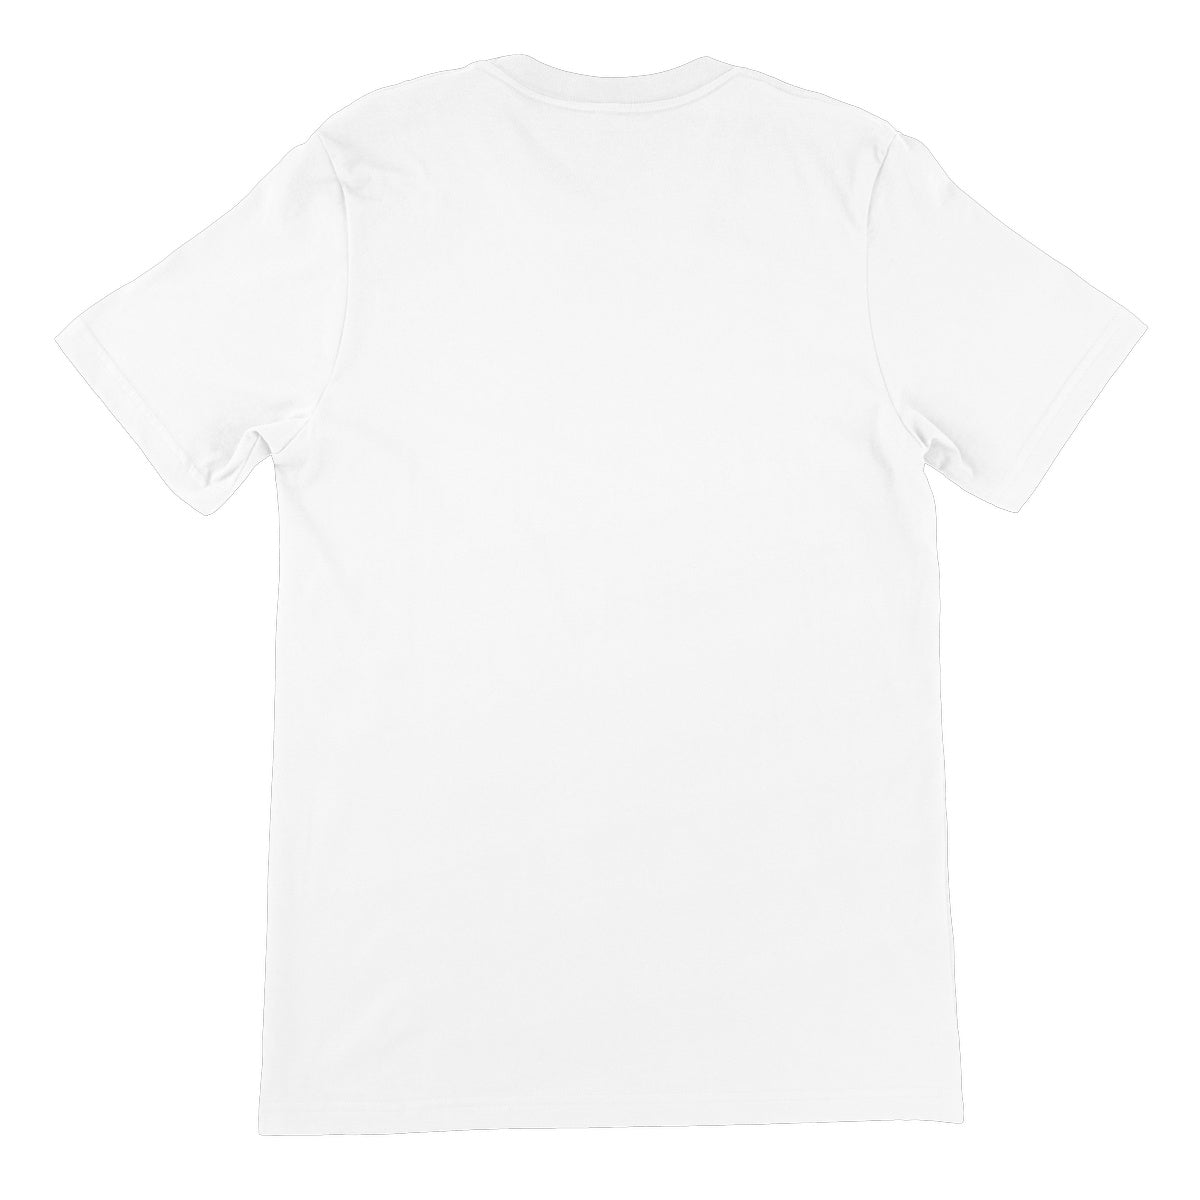 Ferret Kisses Unisex Short Sleeve T-Shirt